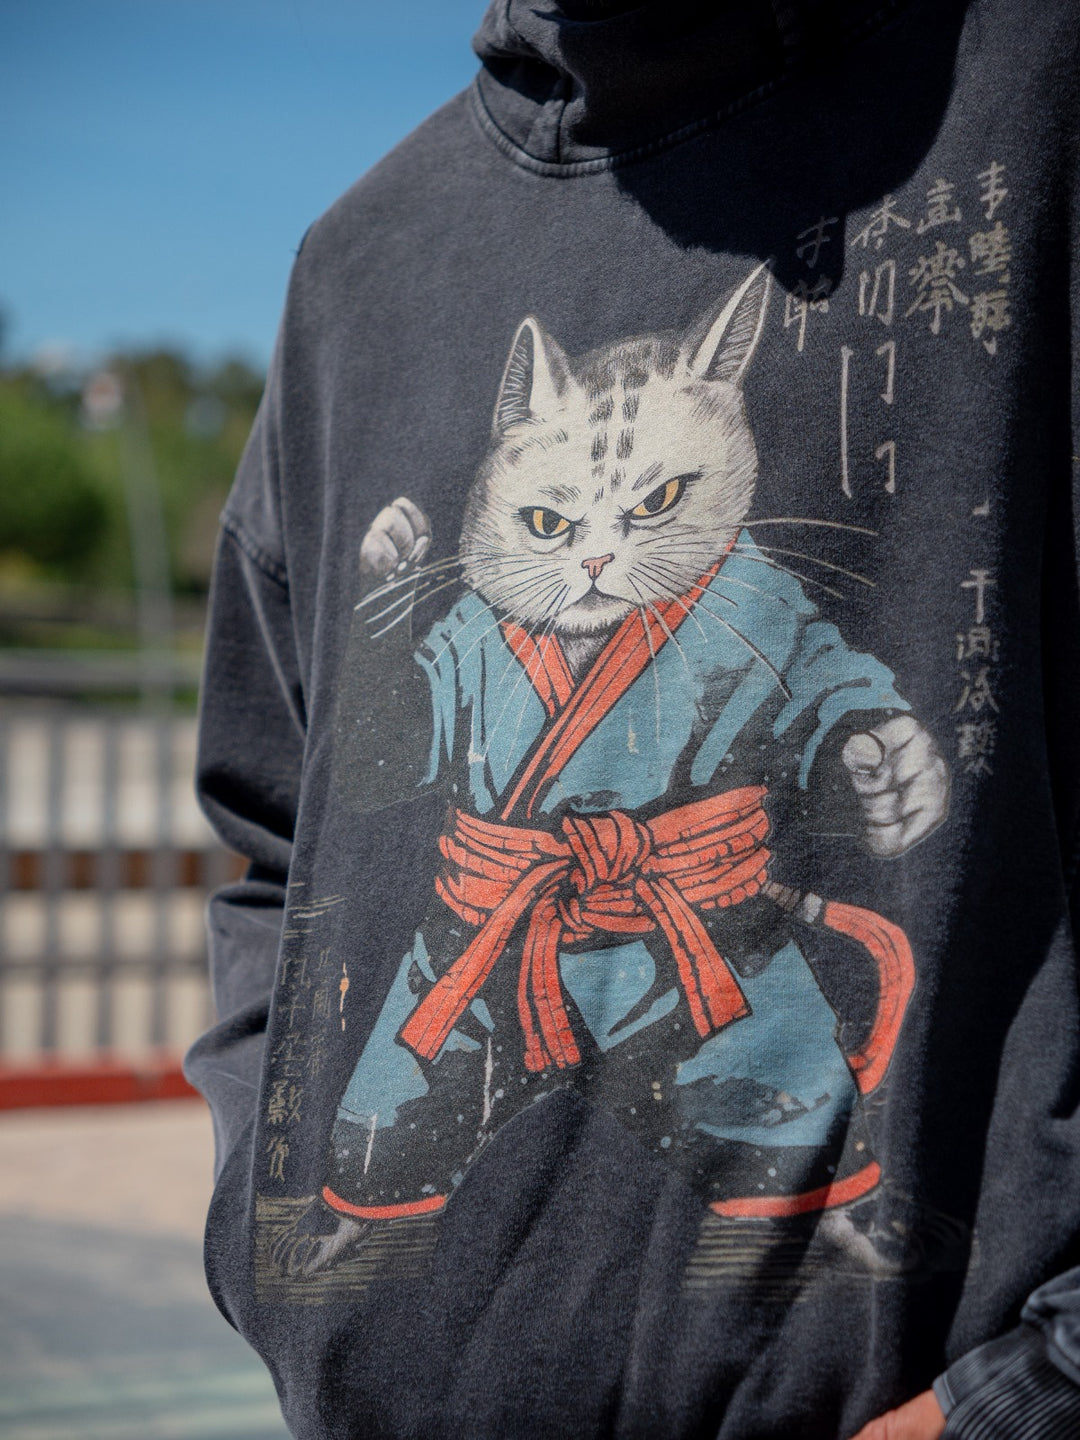 Kanji Karate Cat Washed Turtleneck Hoodie - Unisex Fit